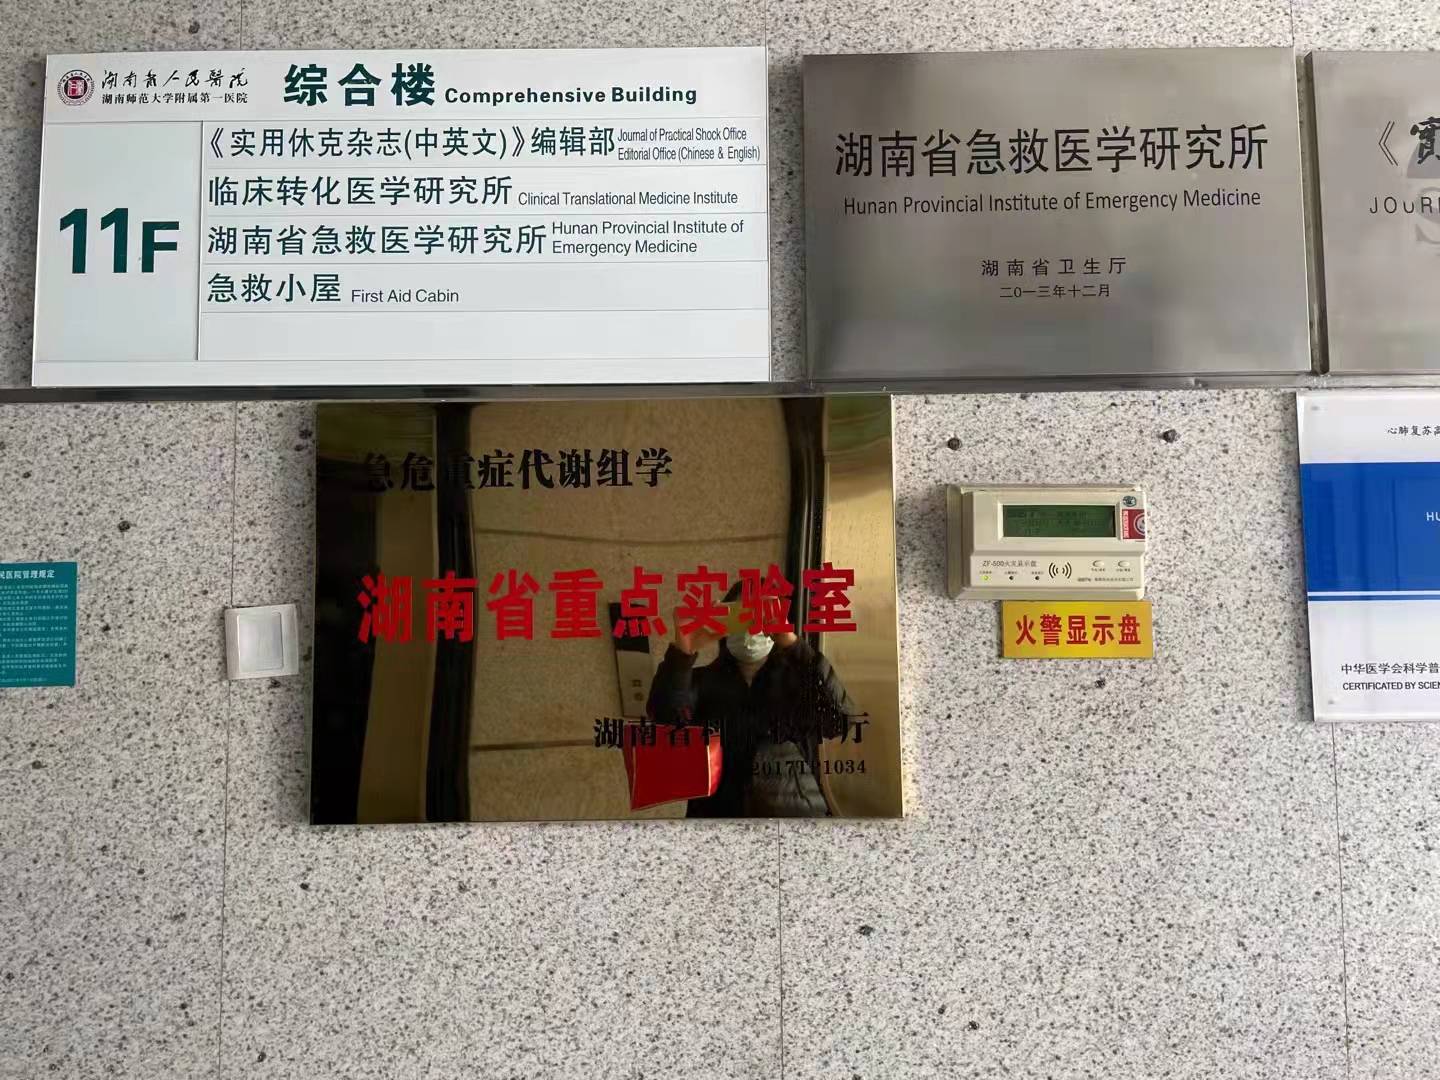 湖南省人民醫院臨床轉化醫學研究所順利安裝MIDMARK小動物麻醉機！